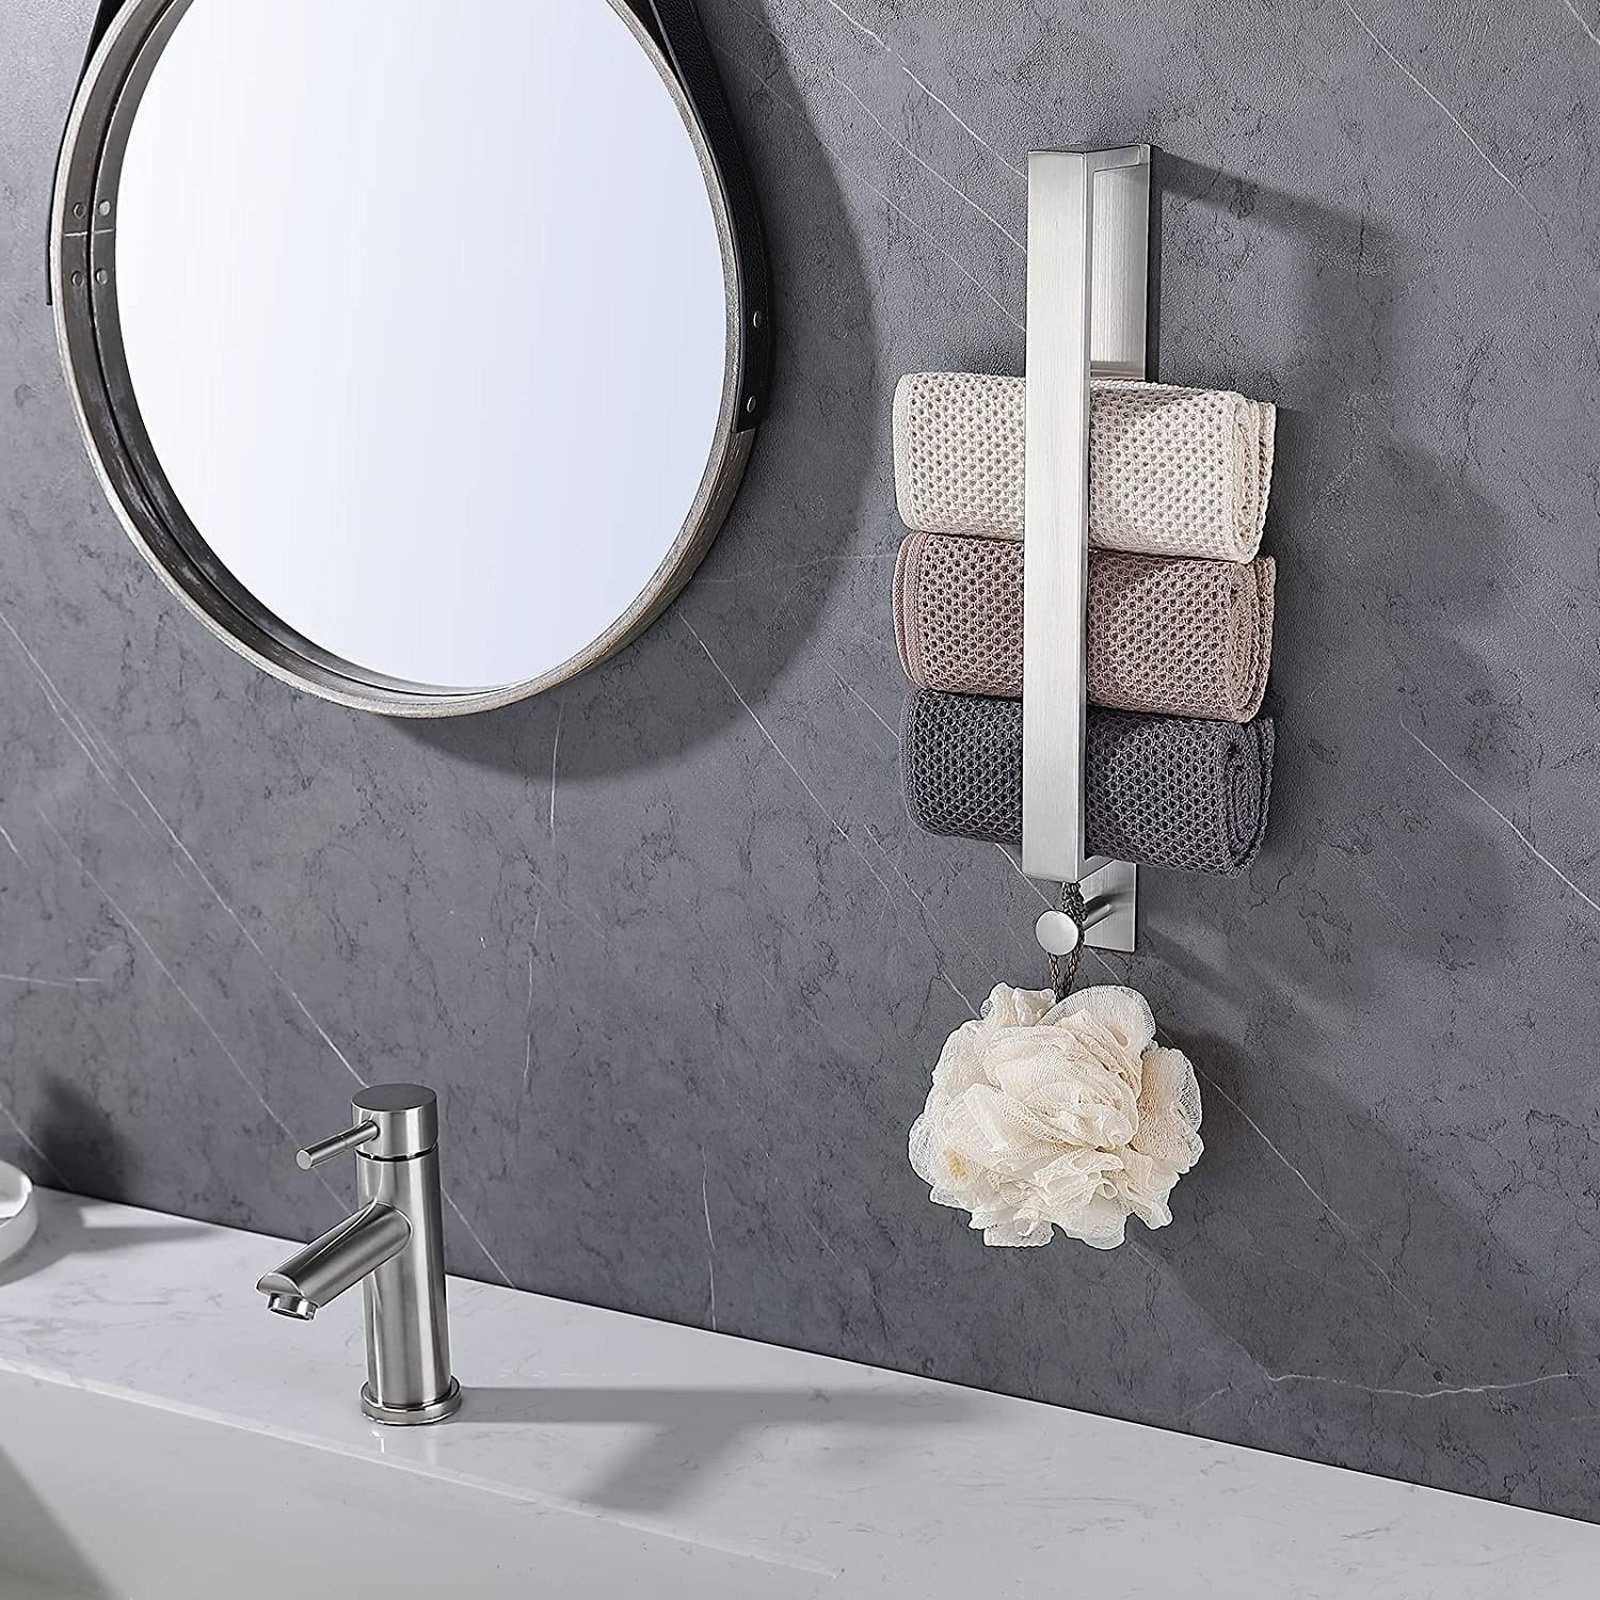 CALIYO Handtuchstange Edelstahl Silber kleber, für mit Badetuchhalter Badezimmer Gästehandtücher Haken Halter Handtuch Handtuchhalter